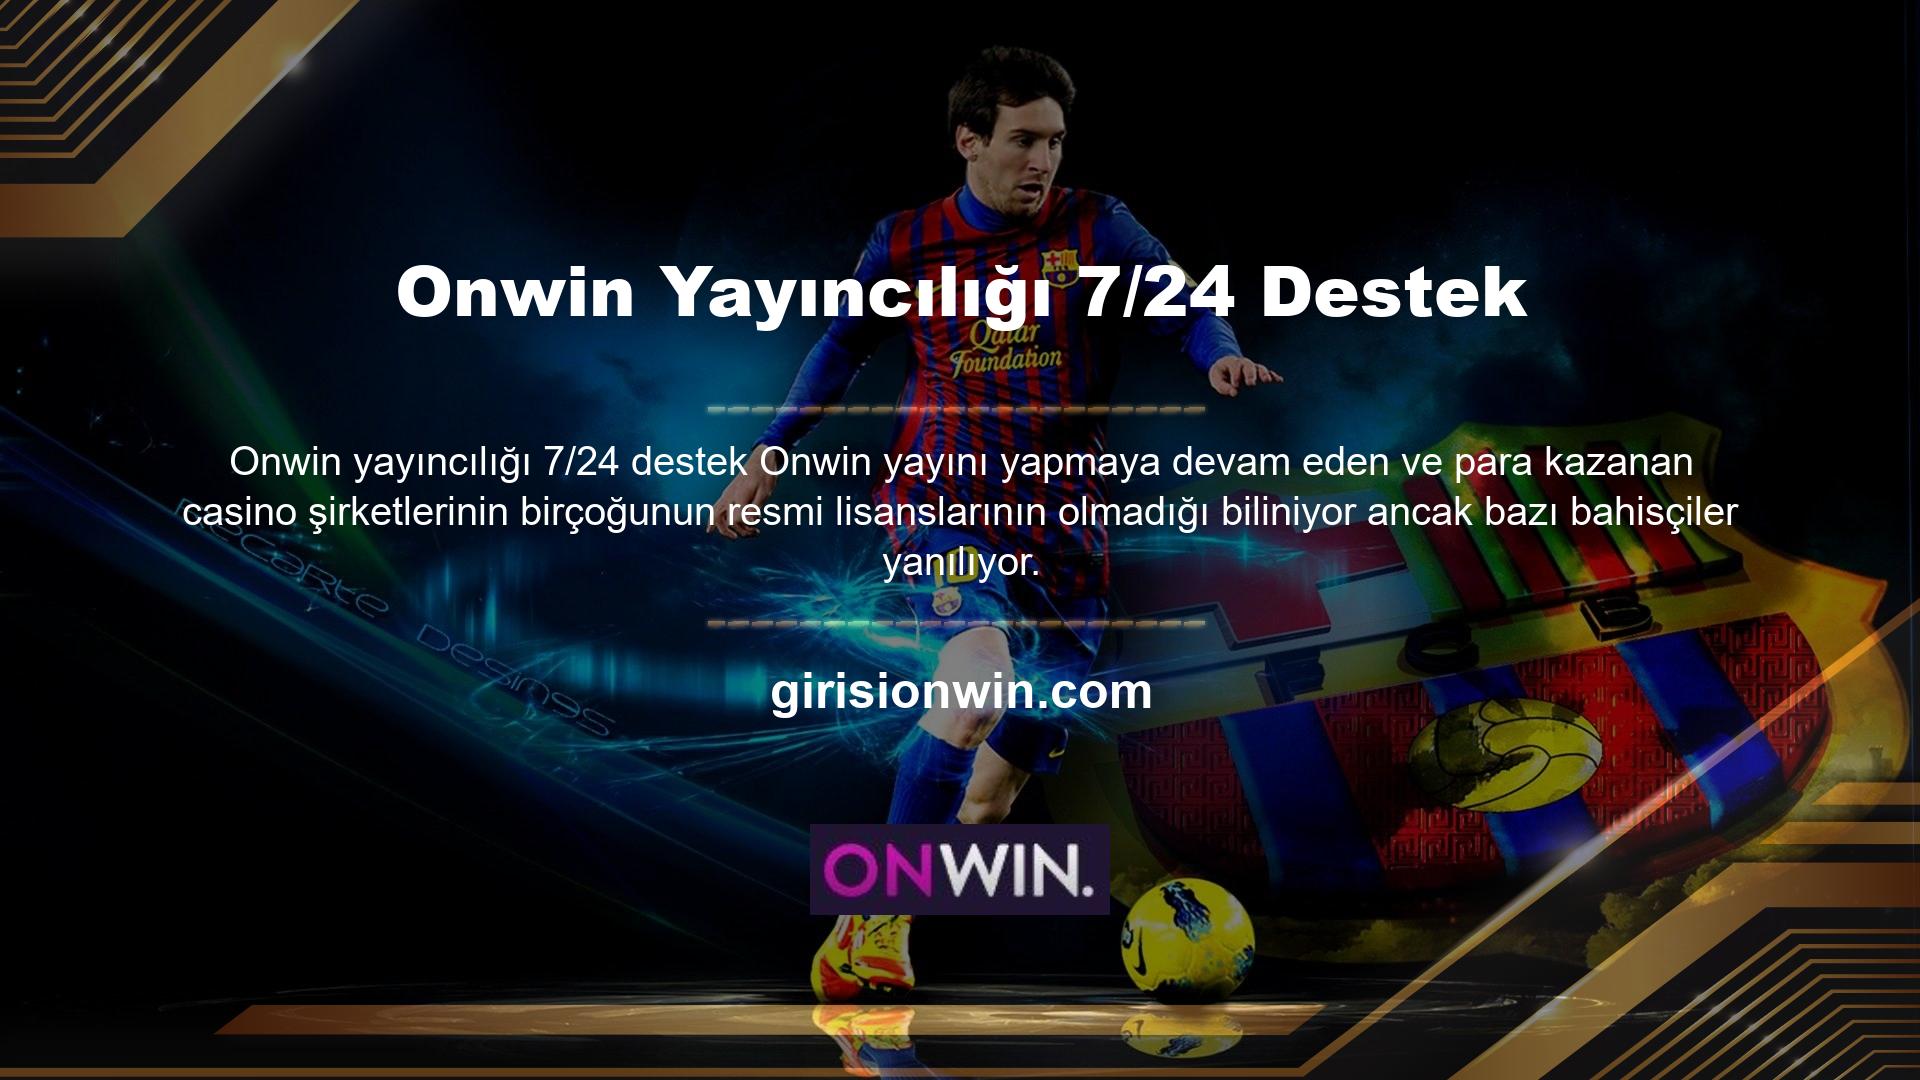 Onwin, Türkiye Cumhuriyeti'nde çevrimiçi casinoların yasak olması ve casino oynamanın veya web sitesine parasal amaçlarla erişmenin yasak olması nedeniyle 7/24 destek sunmaktadır